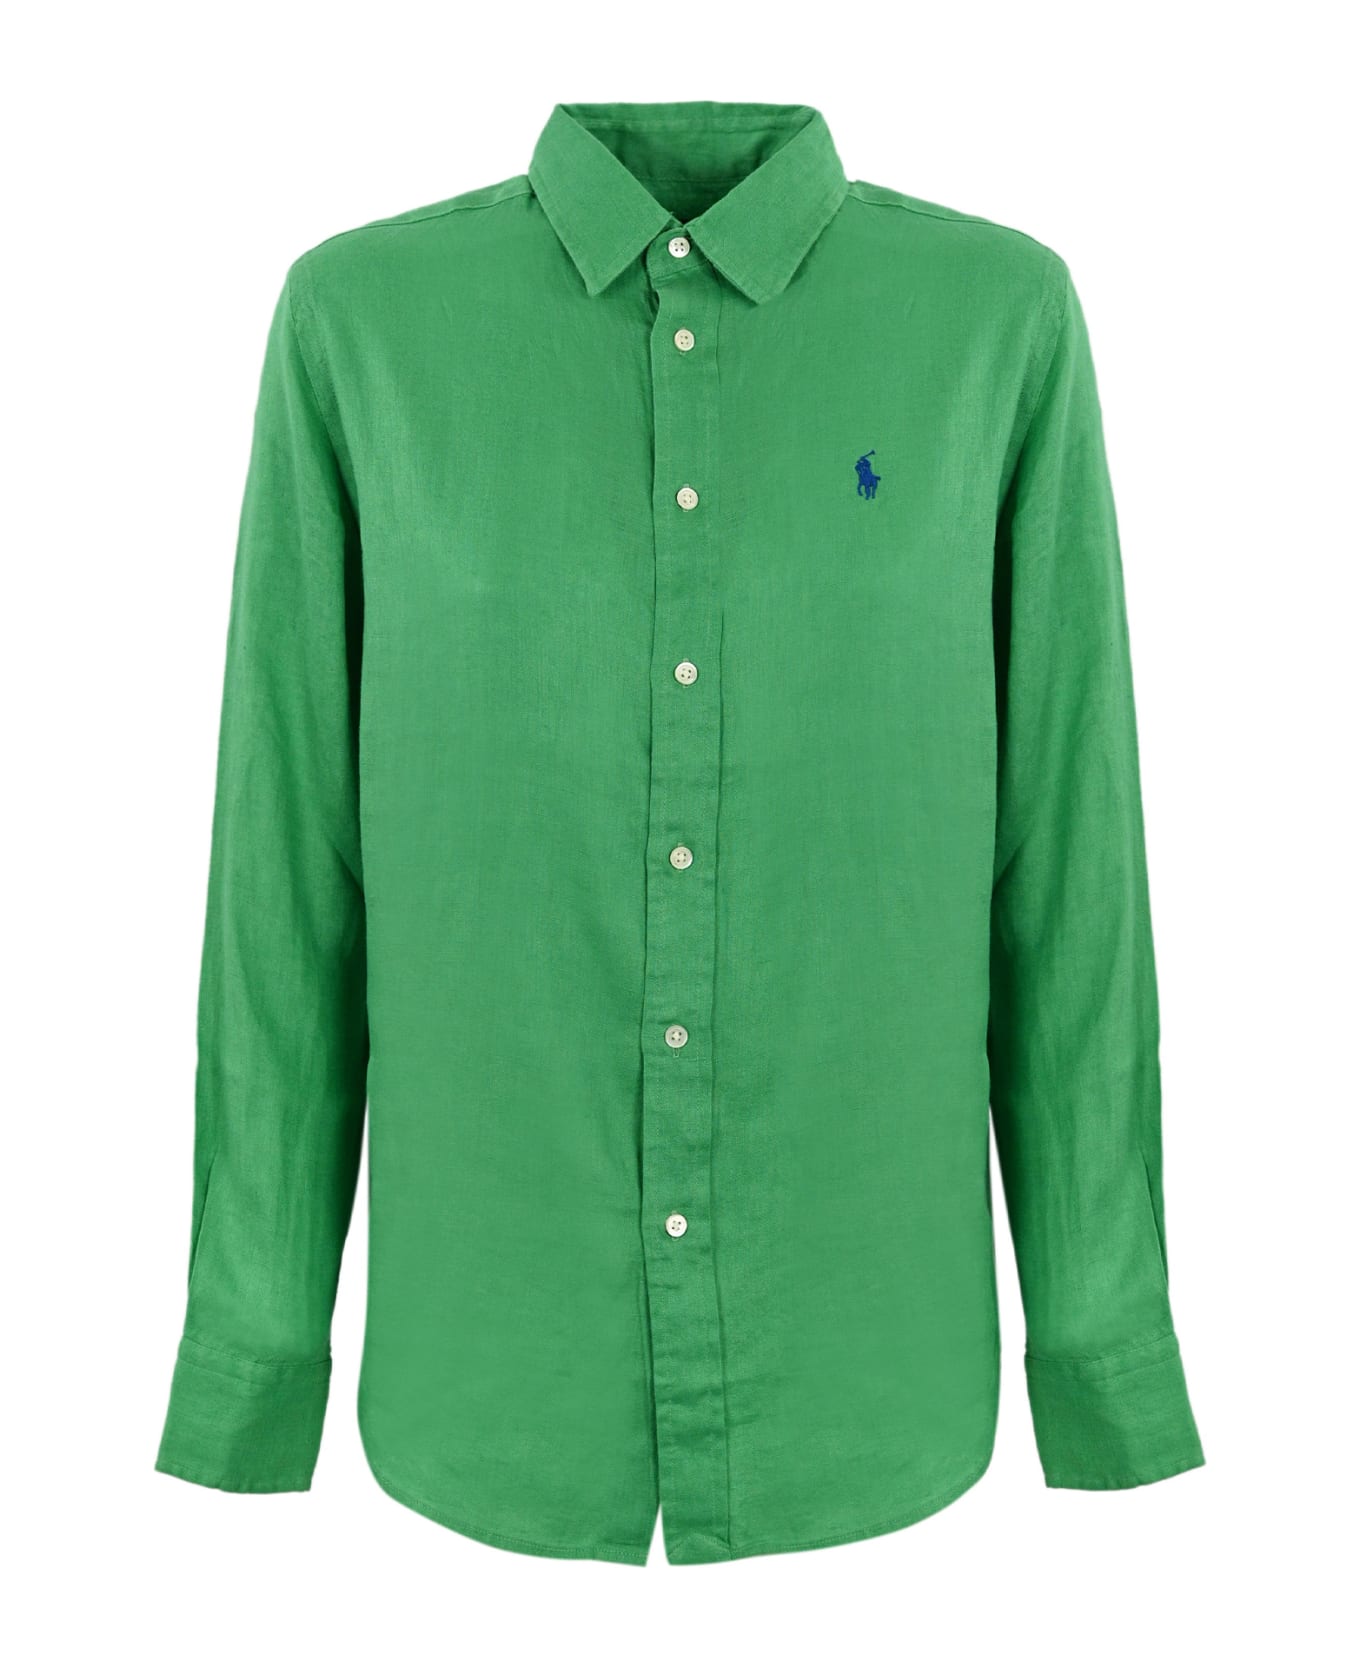 Polo Ralph Lauren Shirt - Vineyard green シャツ